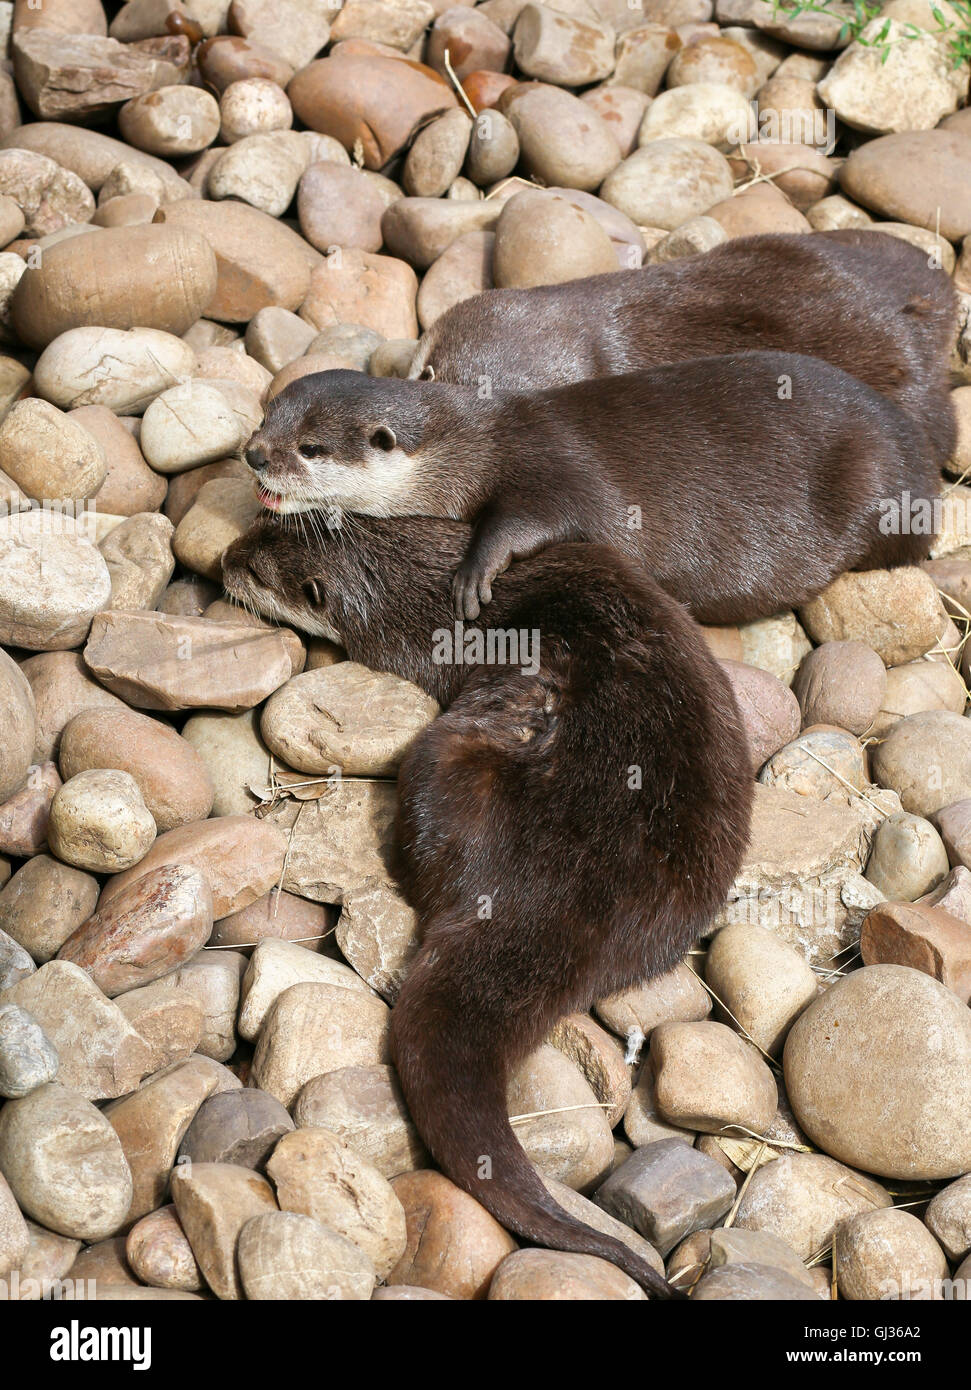 Orientalische kleine krallte Otter Familie schlafen auf der Rock, faul Gruppe von jungen asiatischen kurze Krallen Otter. Stockfoto